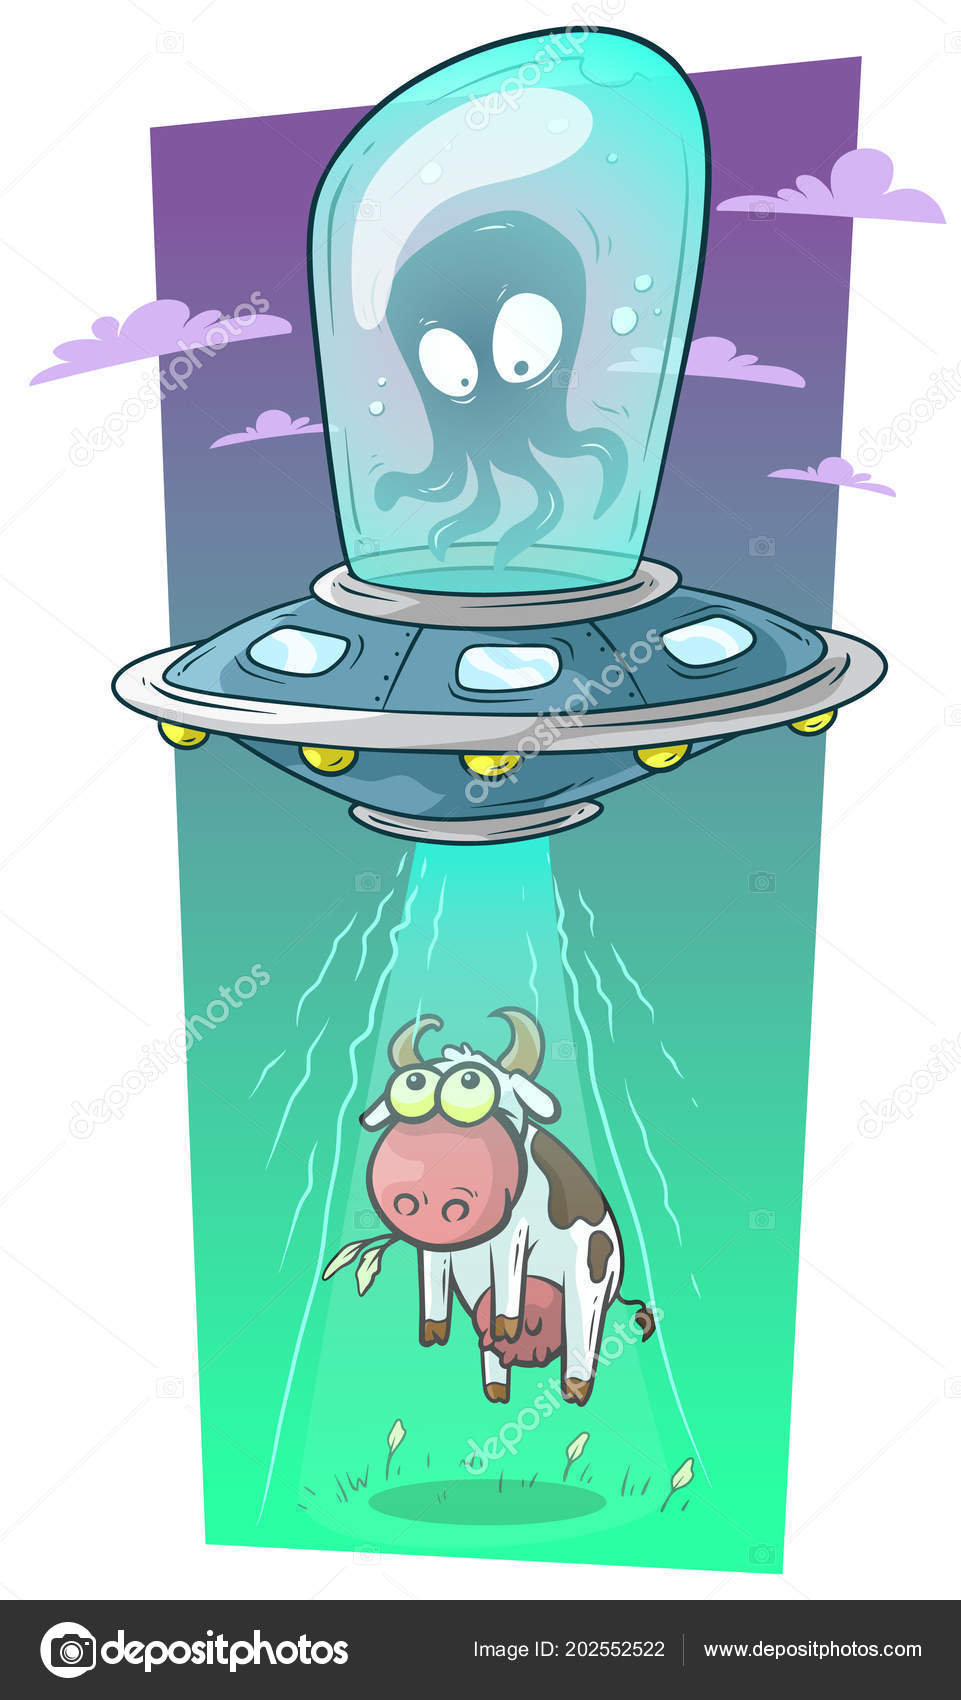 Um desenho animado de dois alienígenas sentados em uma nave